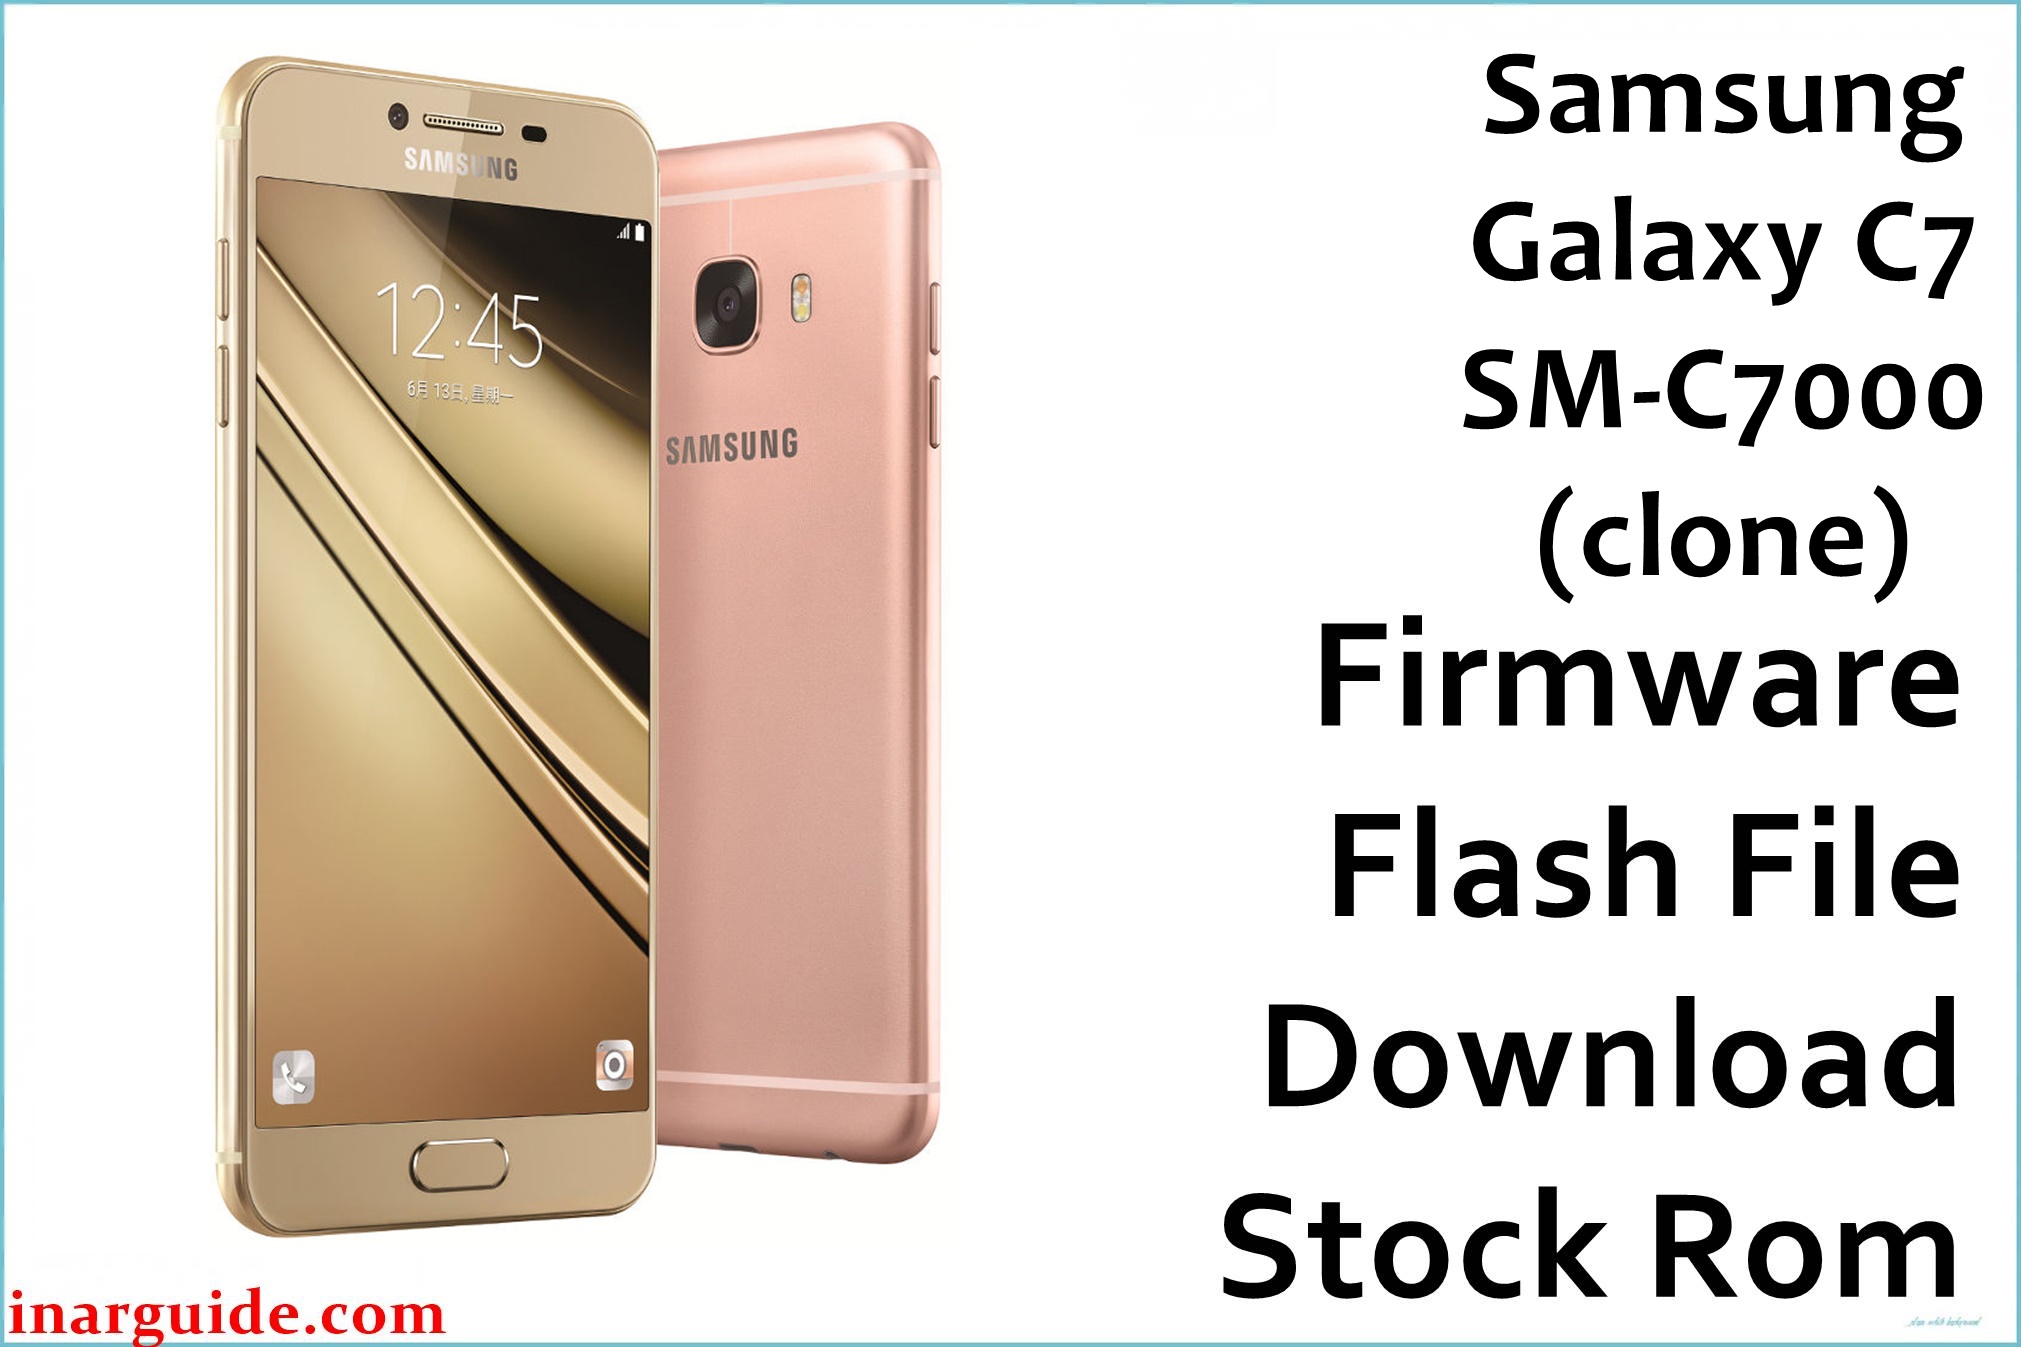 Samsung Galaxy C7 SM C7000 clone